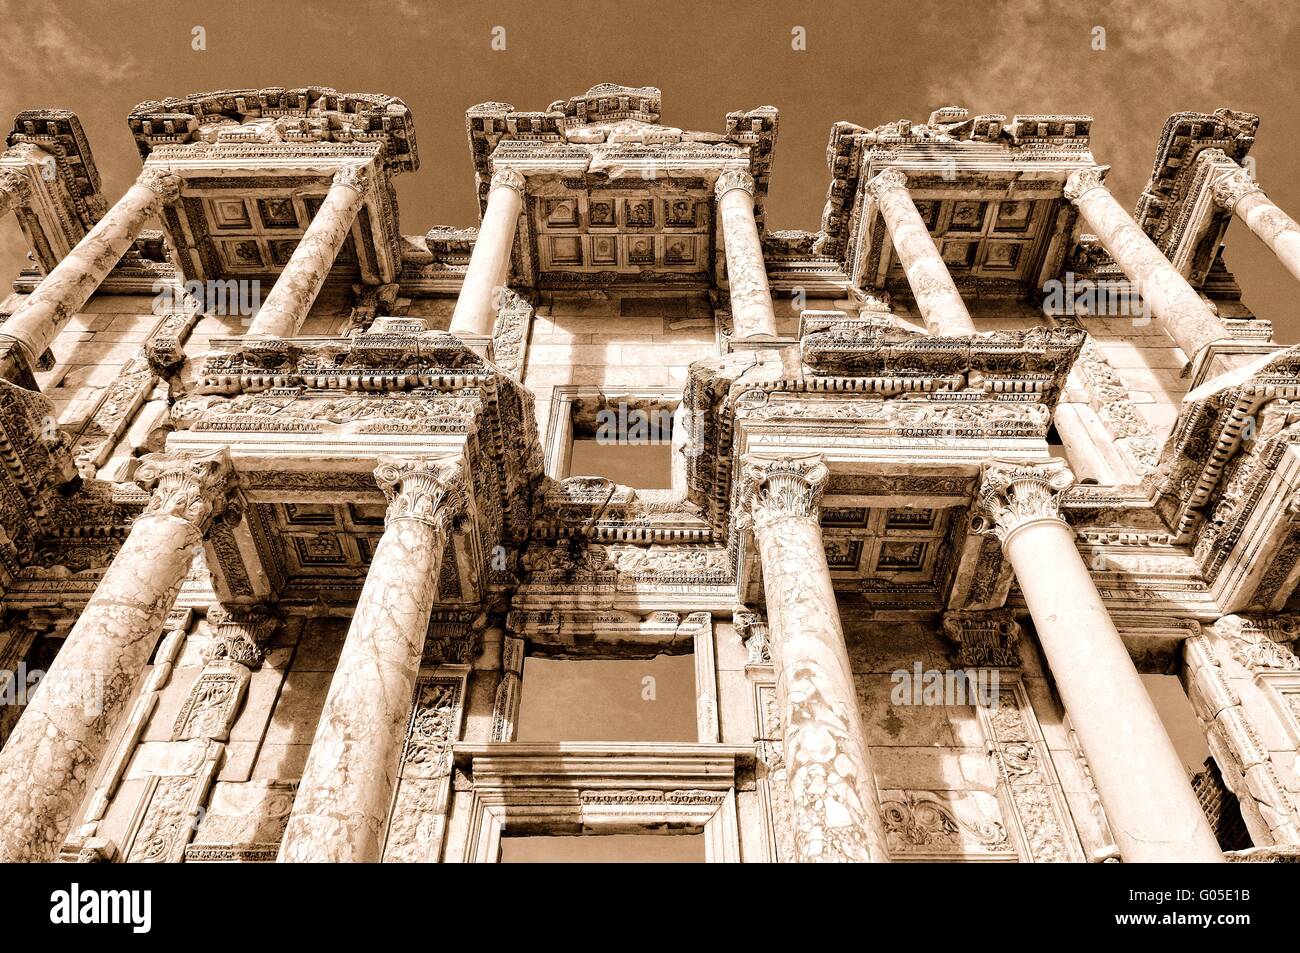 Fachada de la Biblioteca de Celso Éfeso en Turquía Foto de stock